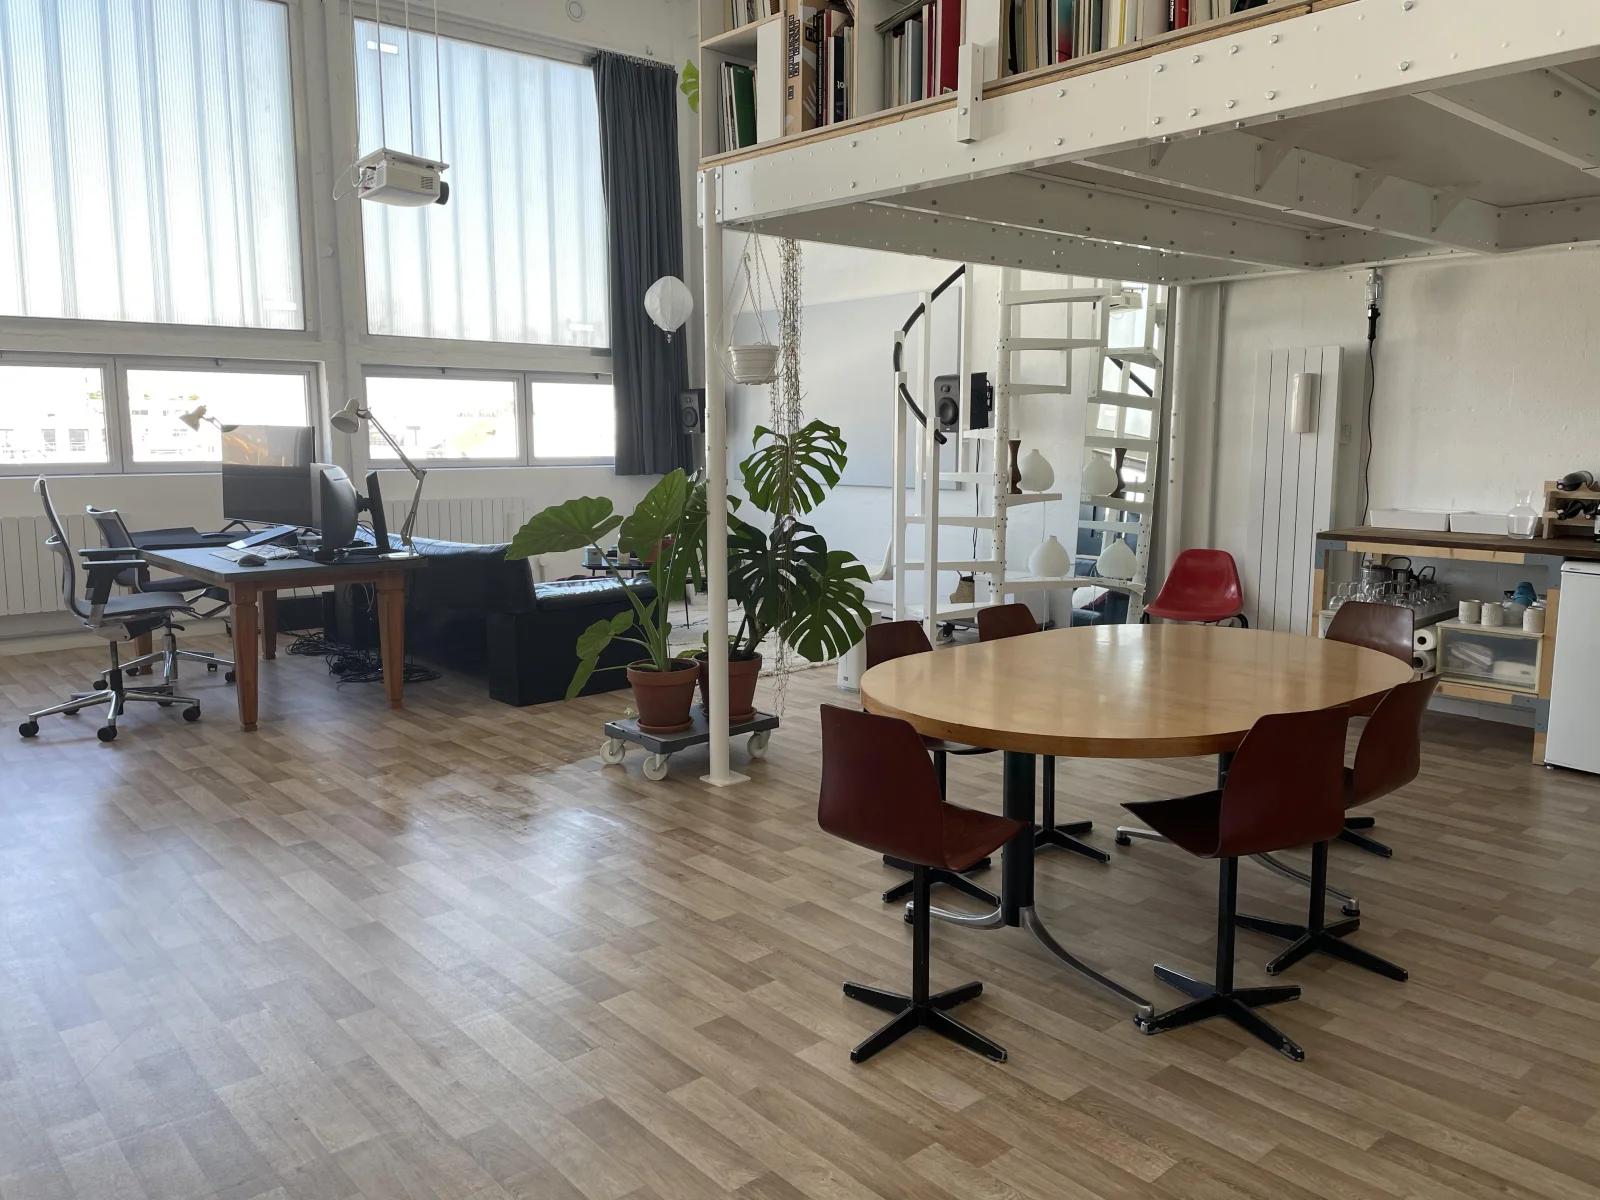 Meeting room in Loft / Artist's studio - 1